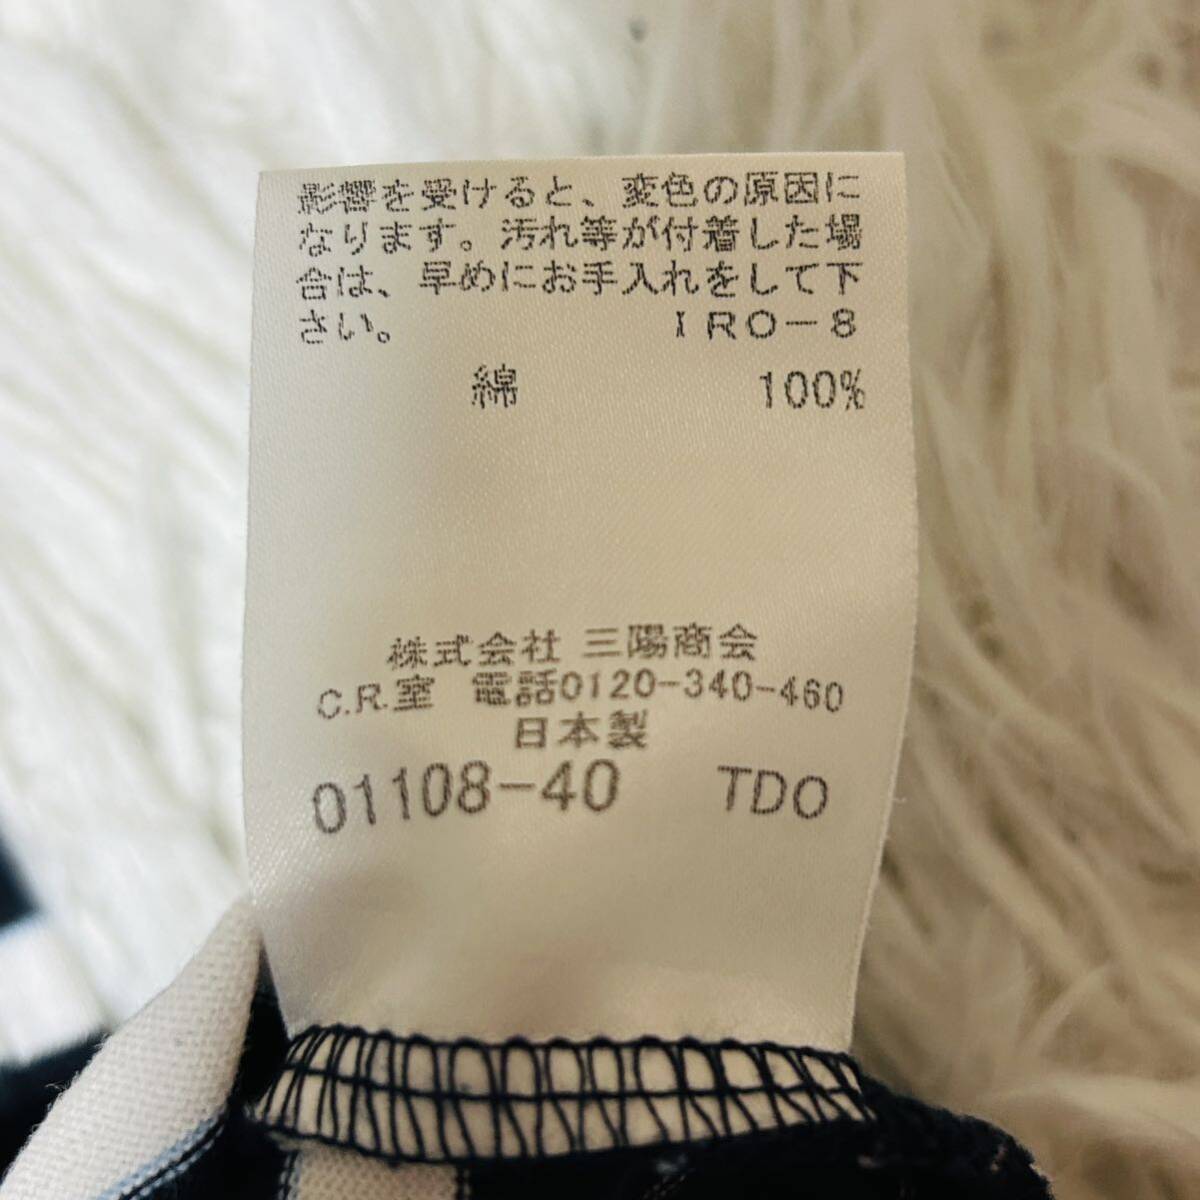  превосходный товар * размер 3(L)* Burberry Black Label BURBERRY BLACK LABEL футболка короткий рукав шланг Logo вышивка V шея окантовка темно-синий серия сделано в Японии 